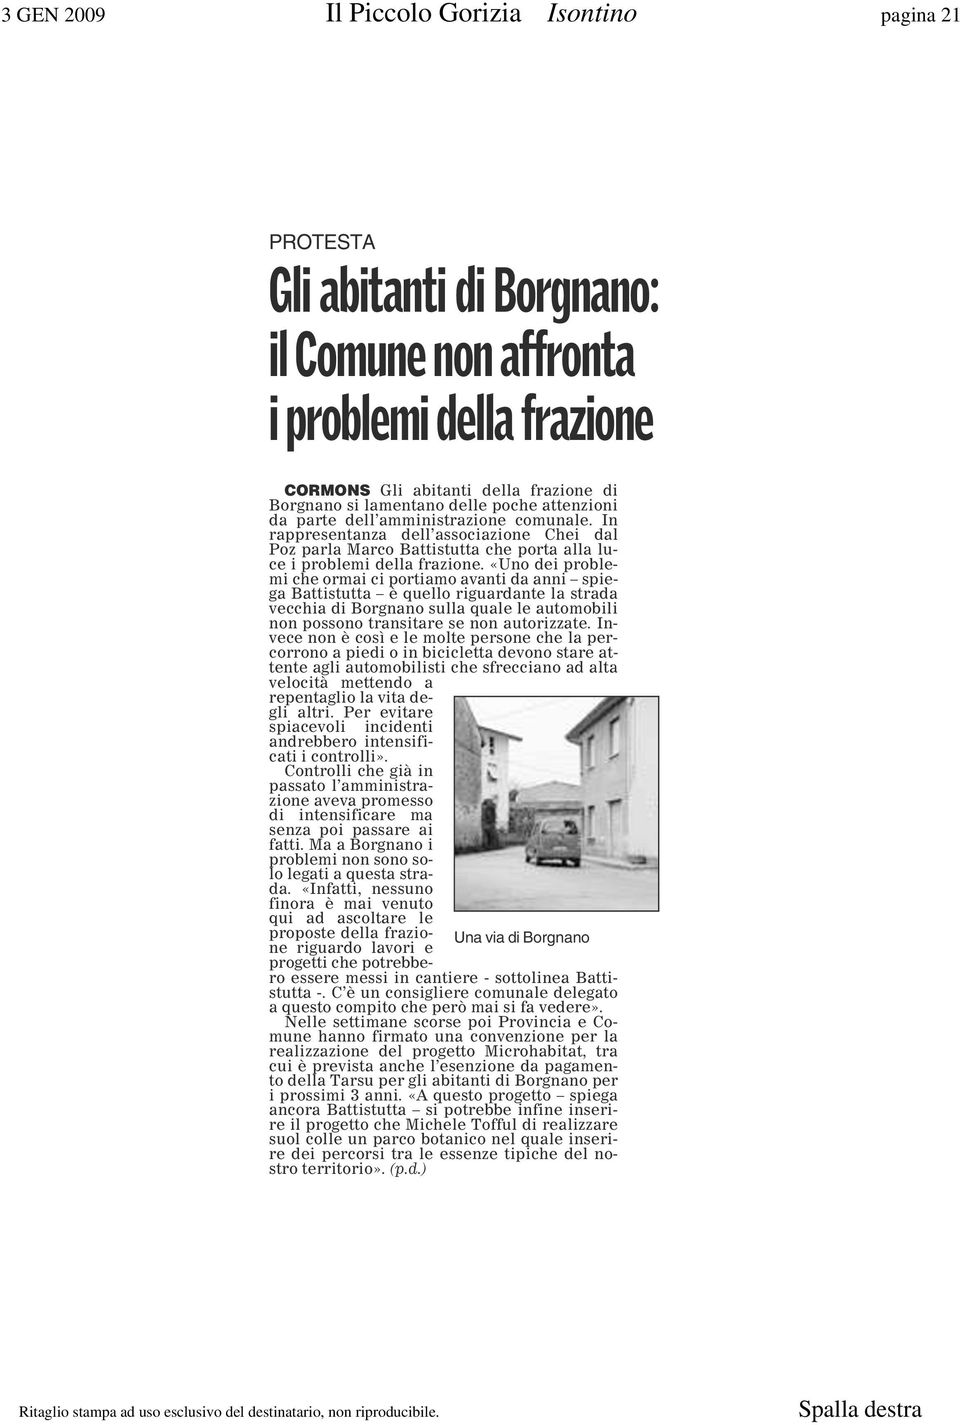 «Uno dei problemi che ormai ci portiamo avanti da anni spiega Battistutta è quello riguardante la strada vecchia di Borgnano sulla quale le automobili non possono transitare se non autorizzate.